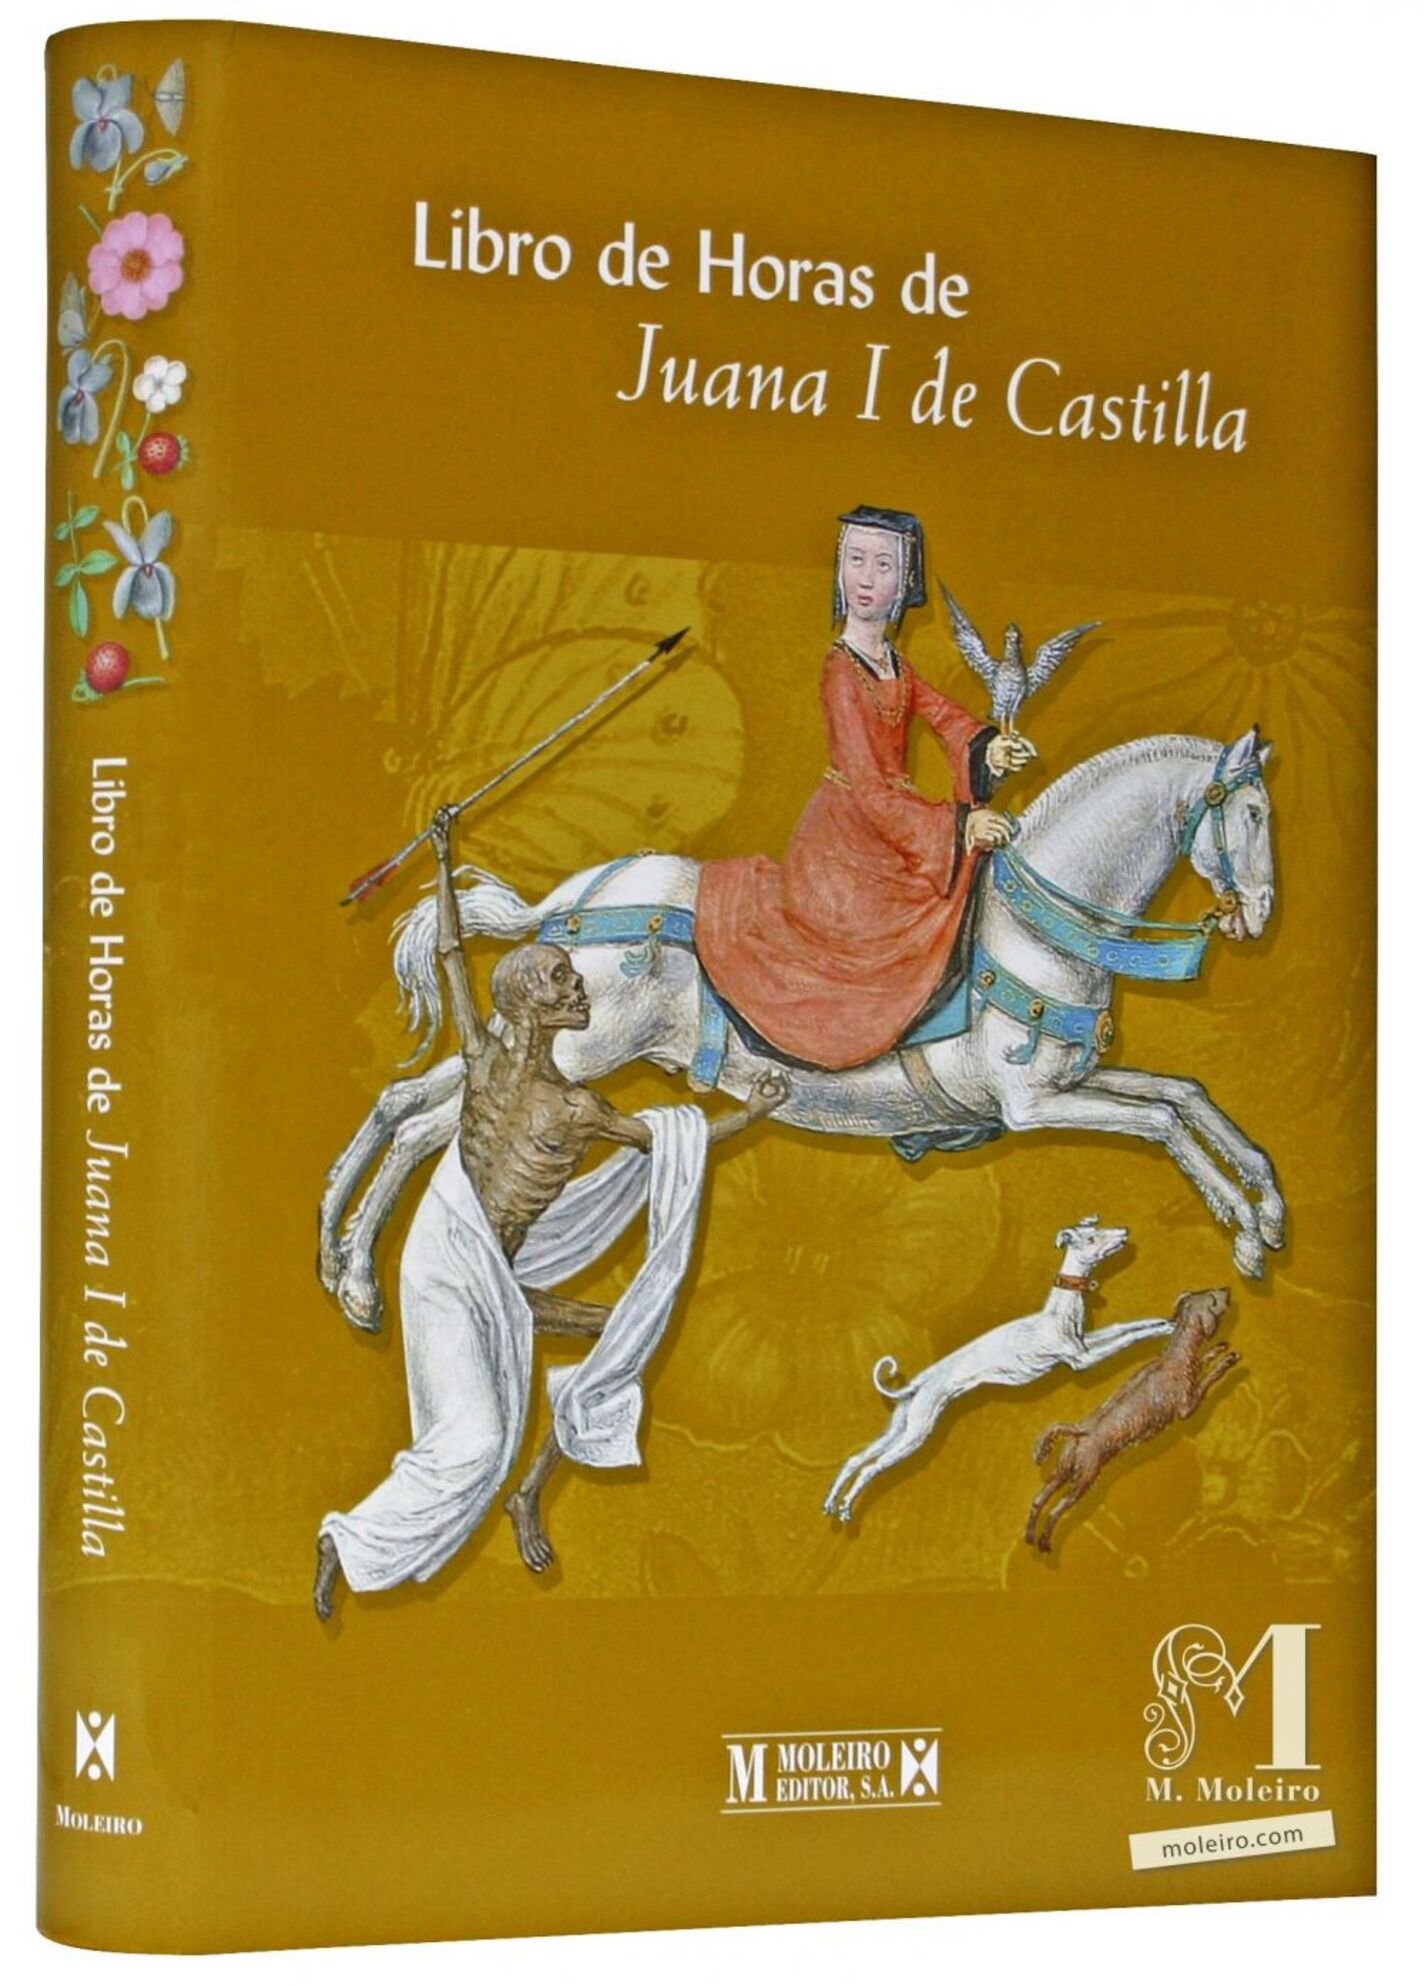 Detalle de la portada y lomo del libro de arte Libro de Horas de Juana I de Castilla (también conocida como Juana La Loca).